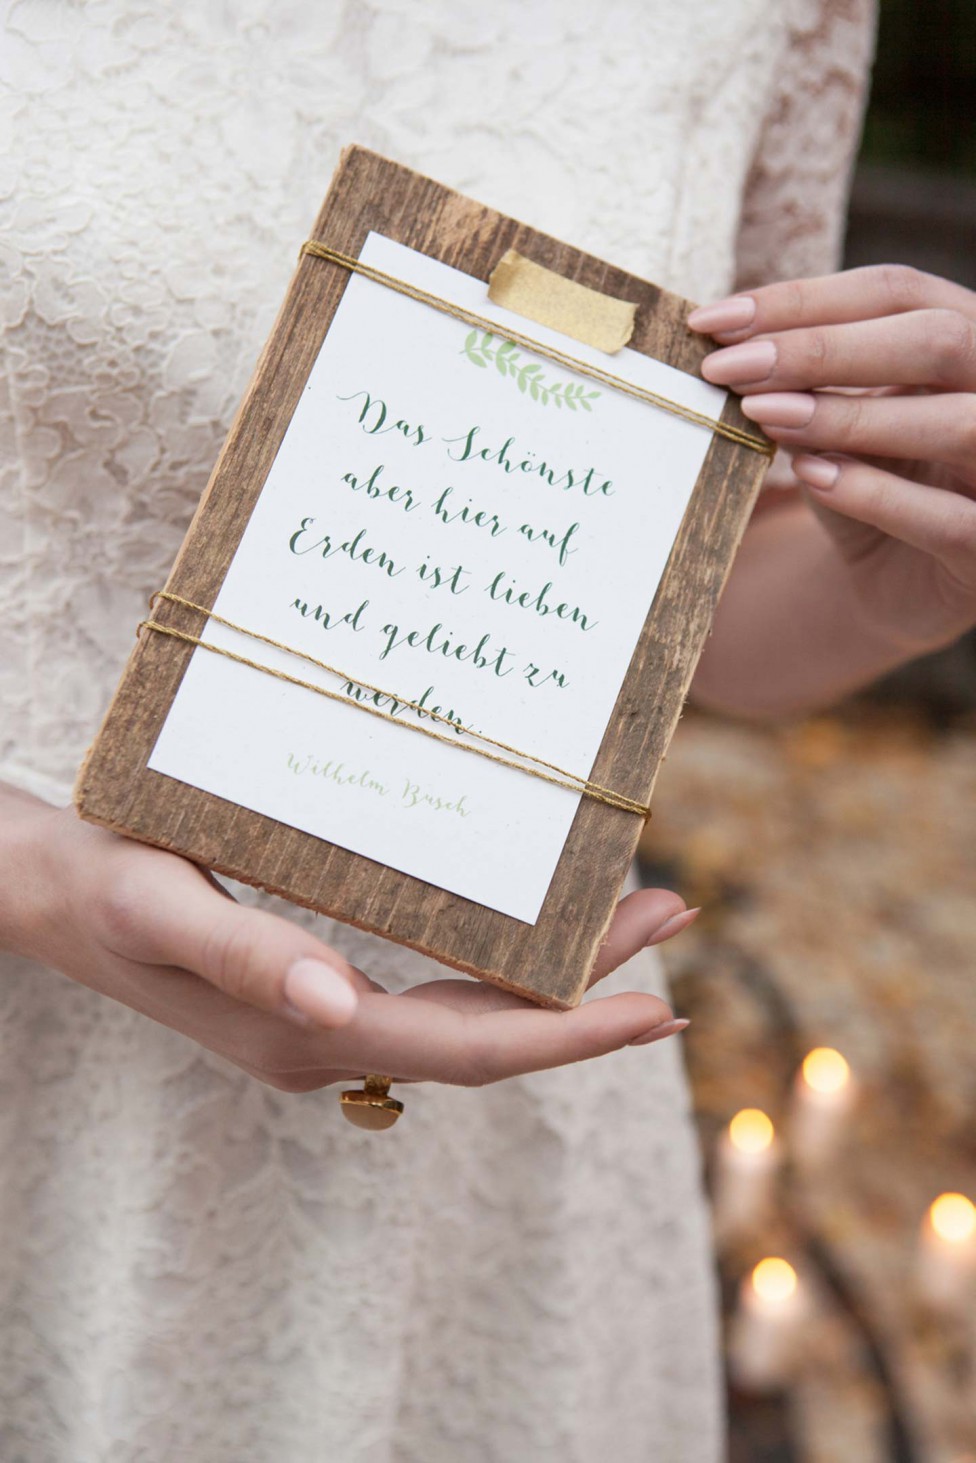 Hochzeitswahn - Eine Braut in einem Spitzenkleid hält ein holzgerahmtes Hochzeitsschild mit einem Zitat von Wilhelm Busch in Schrift, akzentuiert durch einen grünen Zweig.